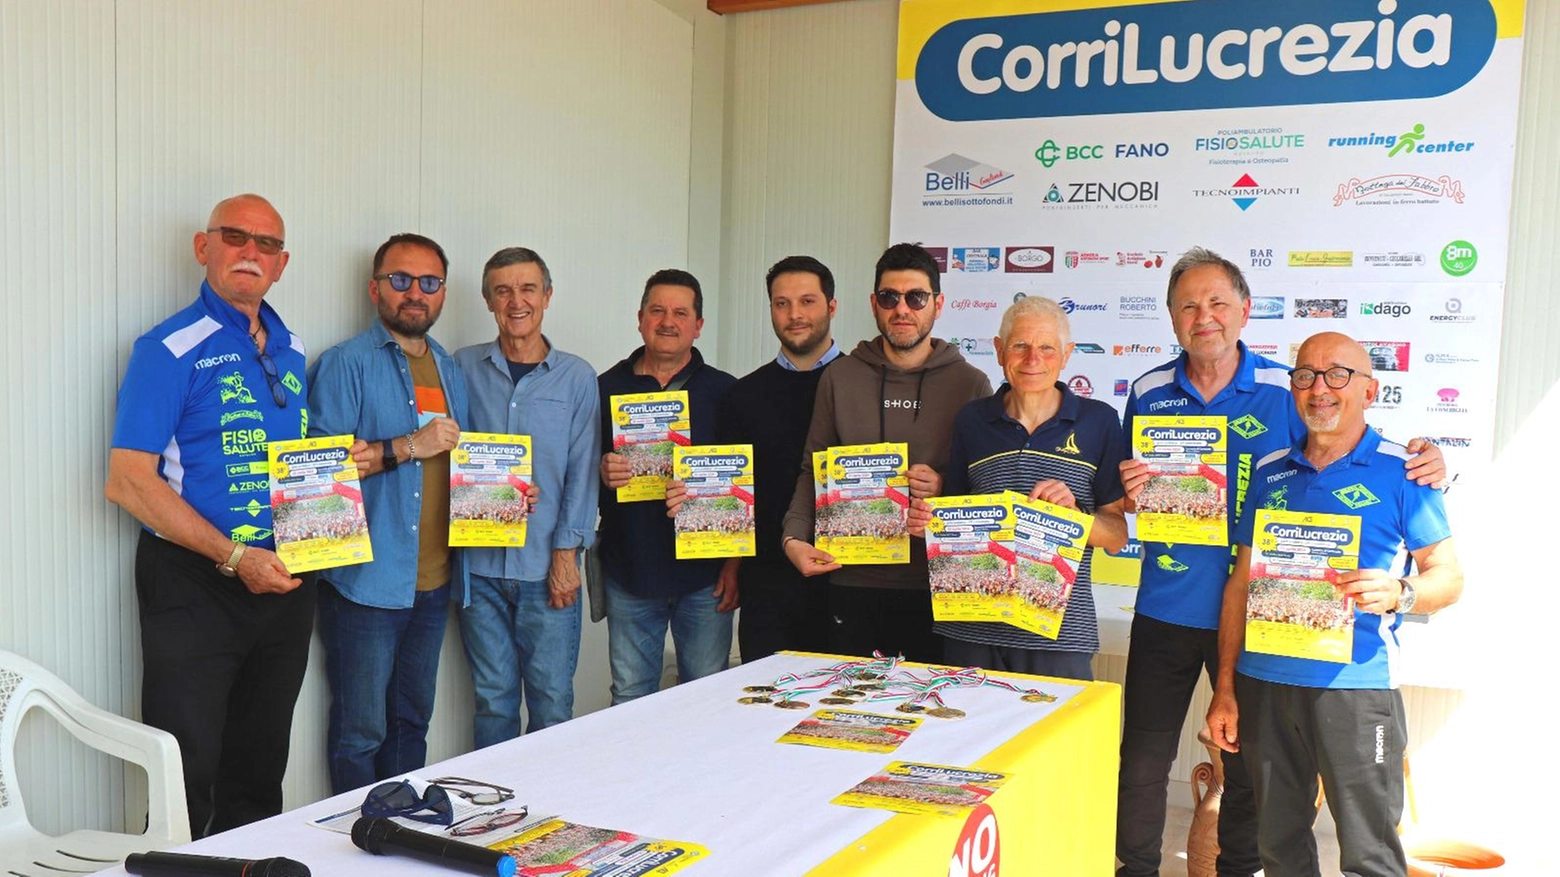 Il Gruppo Podistico Lucrezia, insieme al Comune di Cartoceto, organizza la gara podistica 'CorriLucrezia' il 25 aprile, con premi e prove giovanili. Sponsor e autorità presenti.